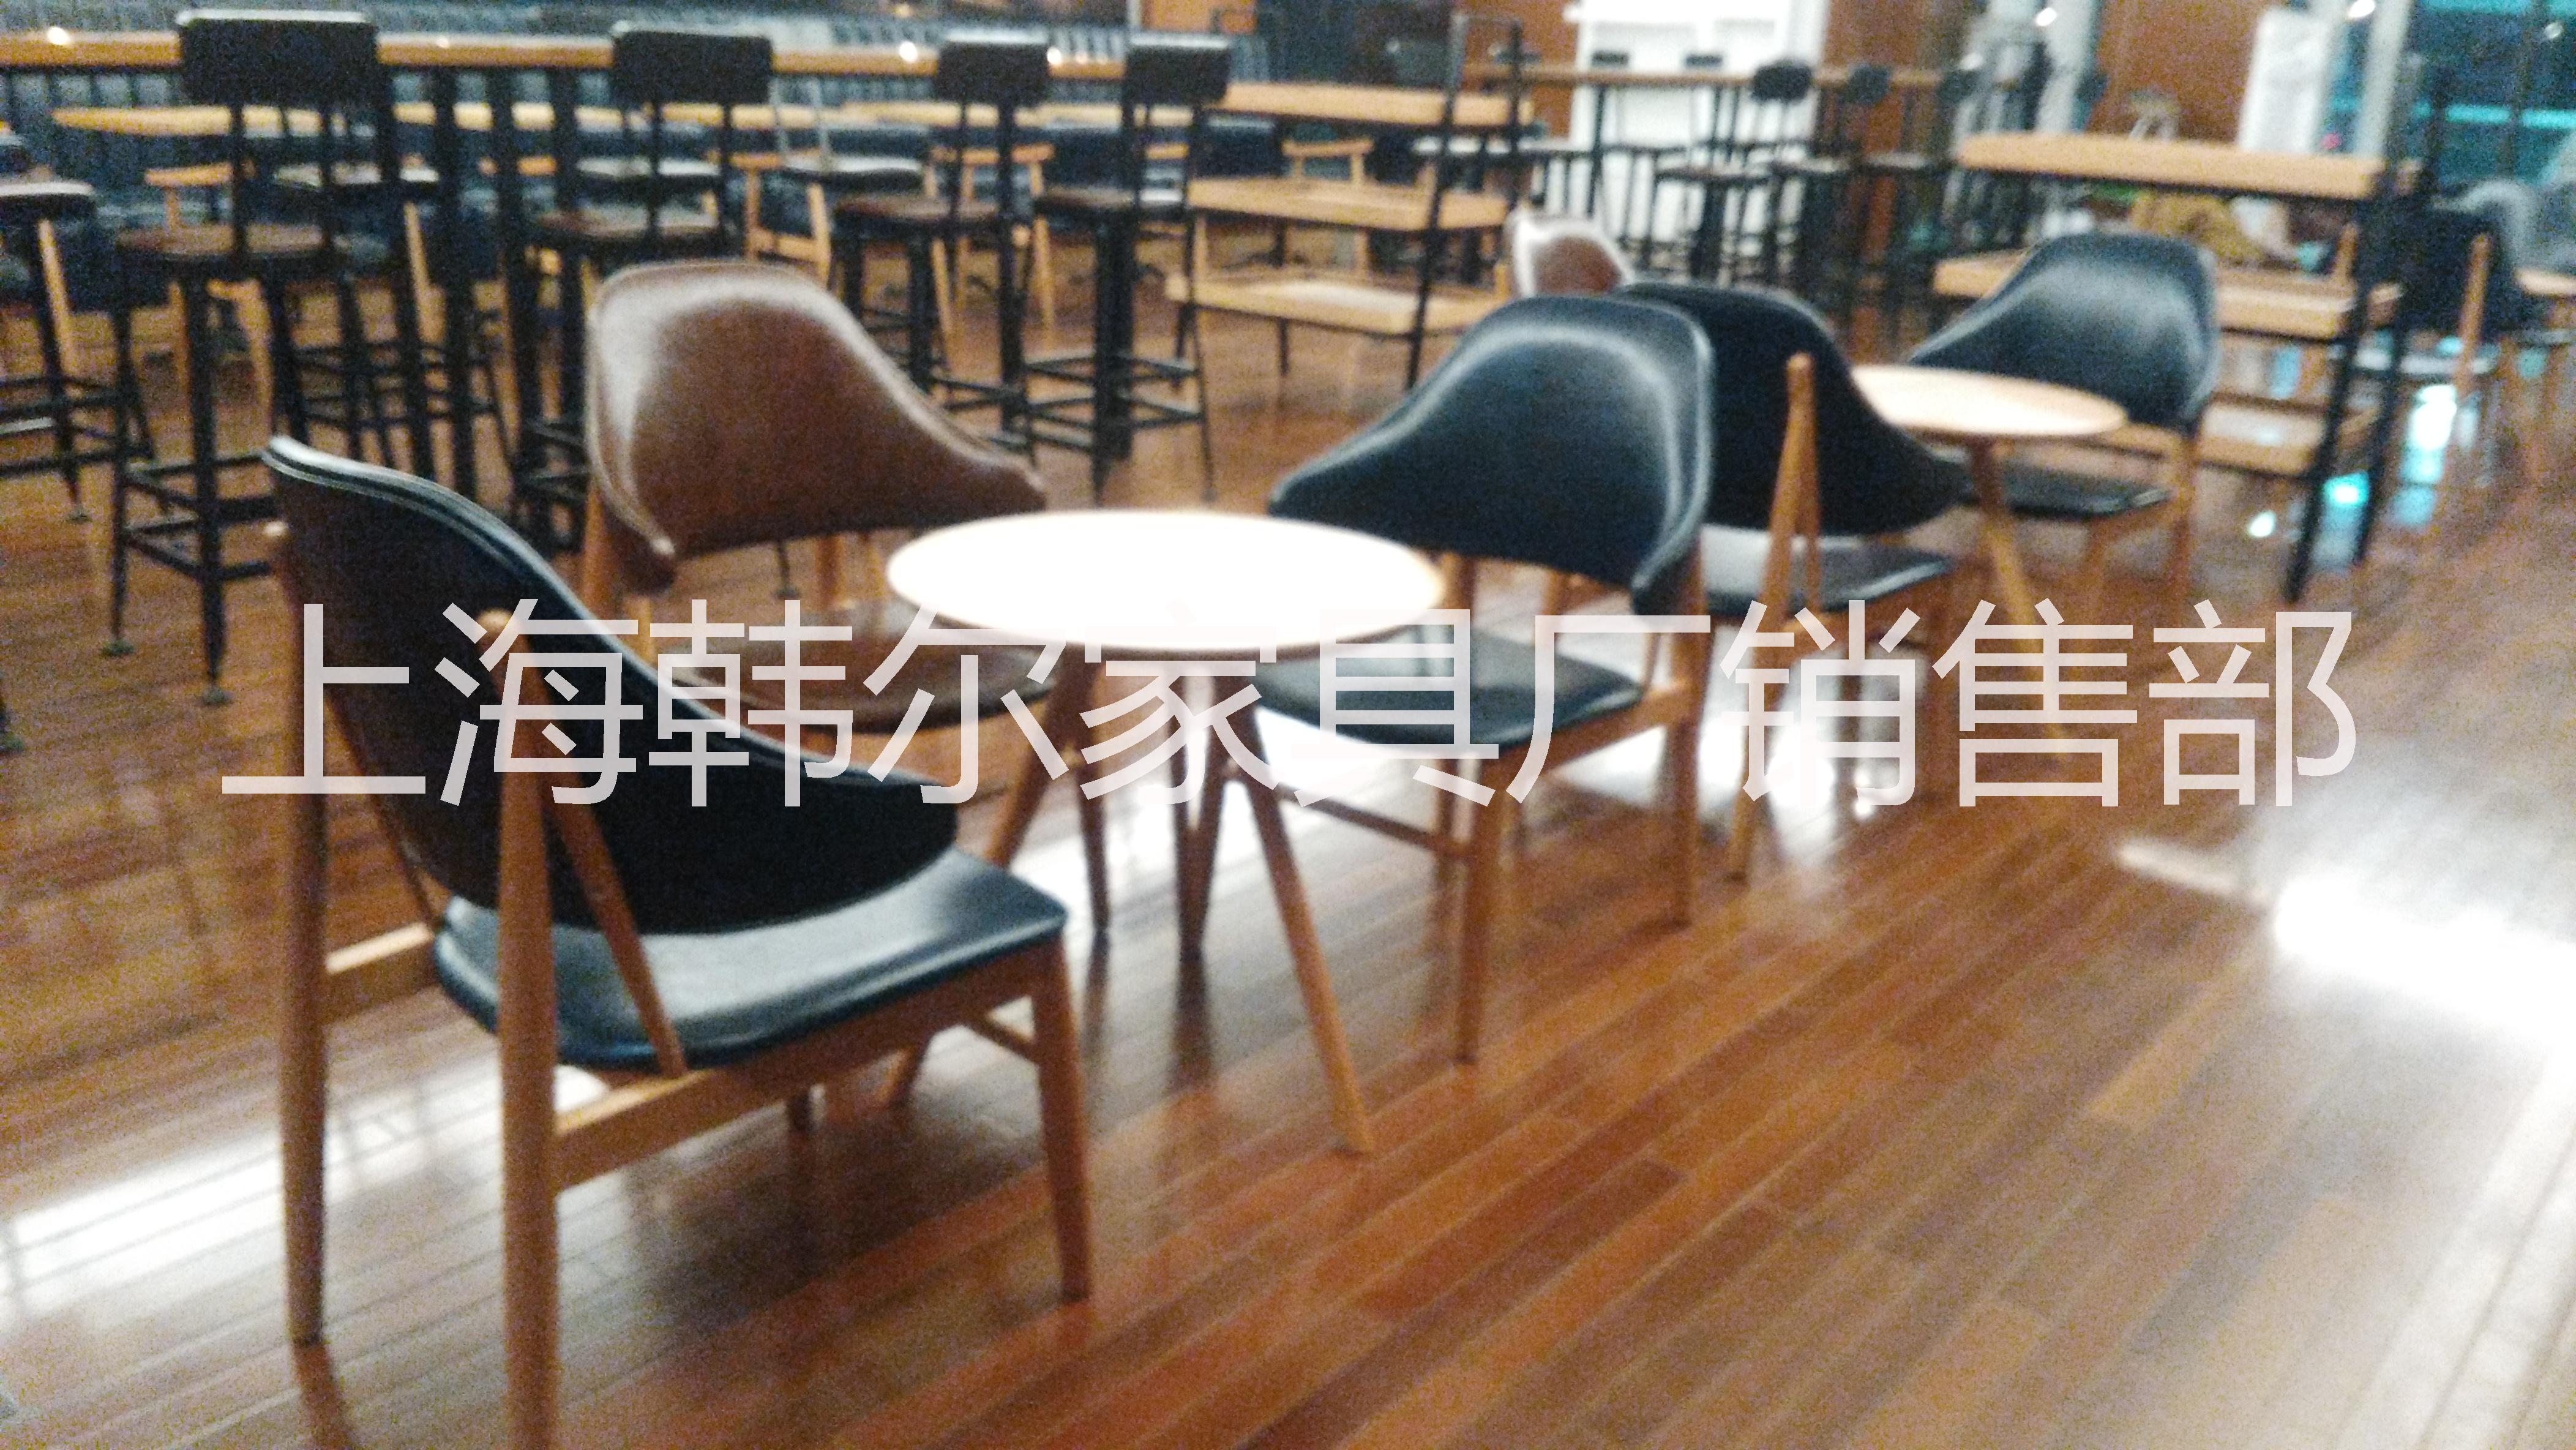 供应上海高级餐厅桌椅生产厂家  上海韩尔家具工厂